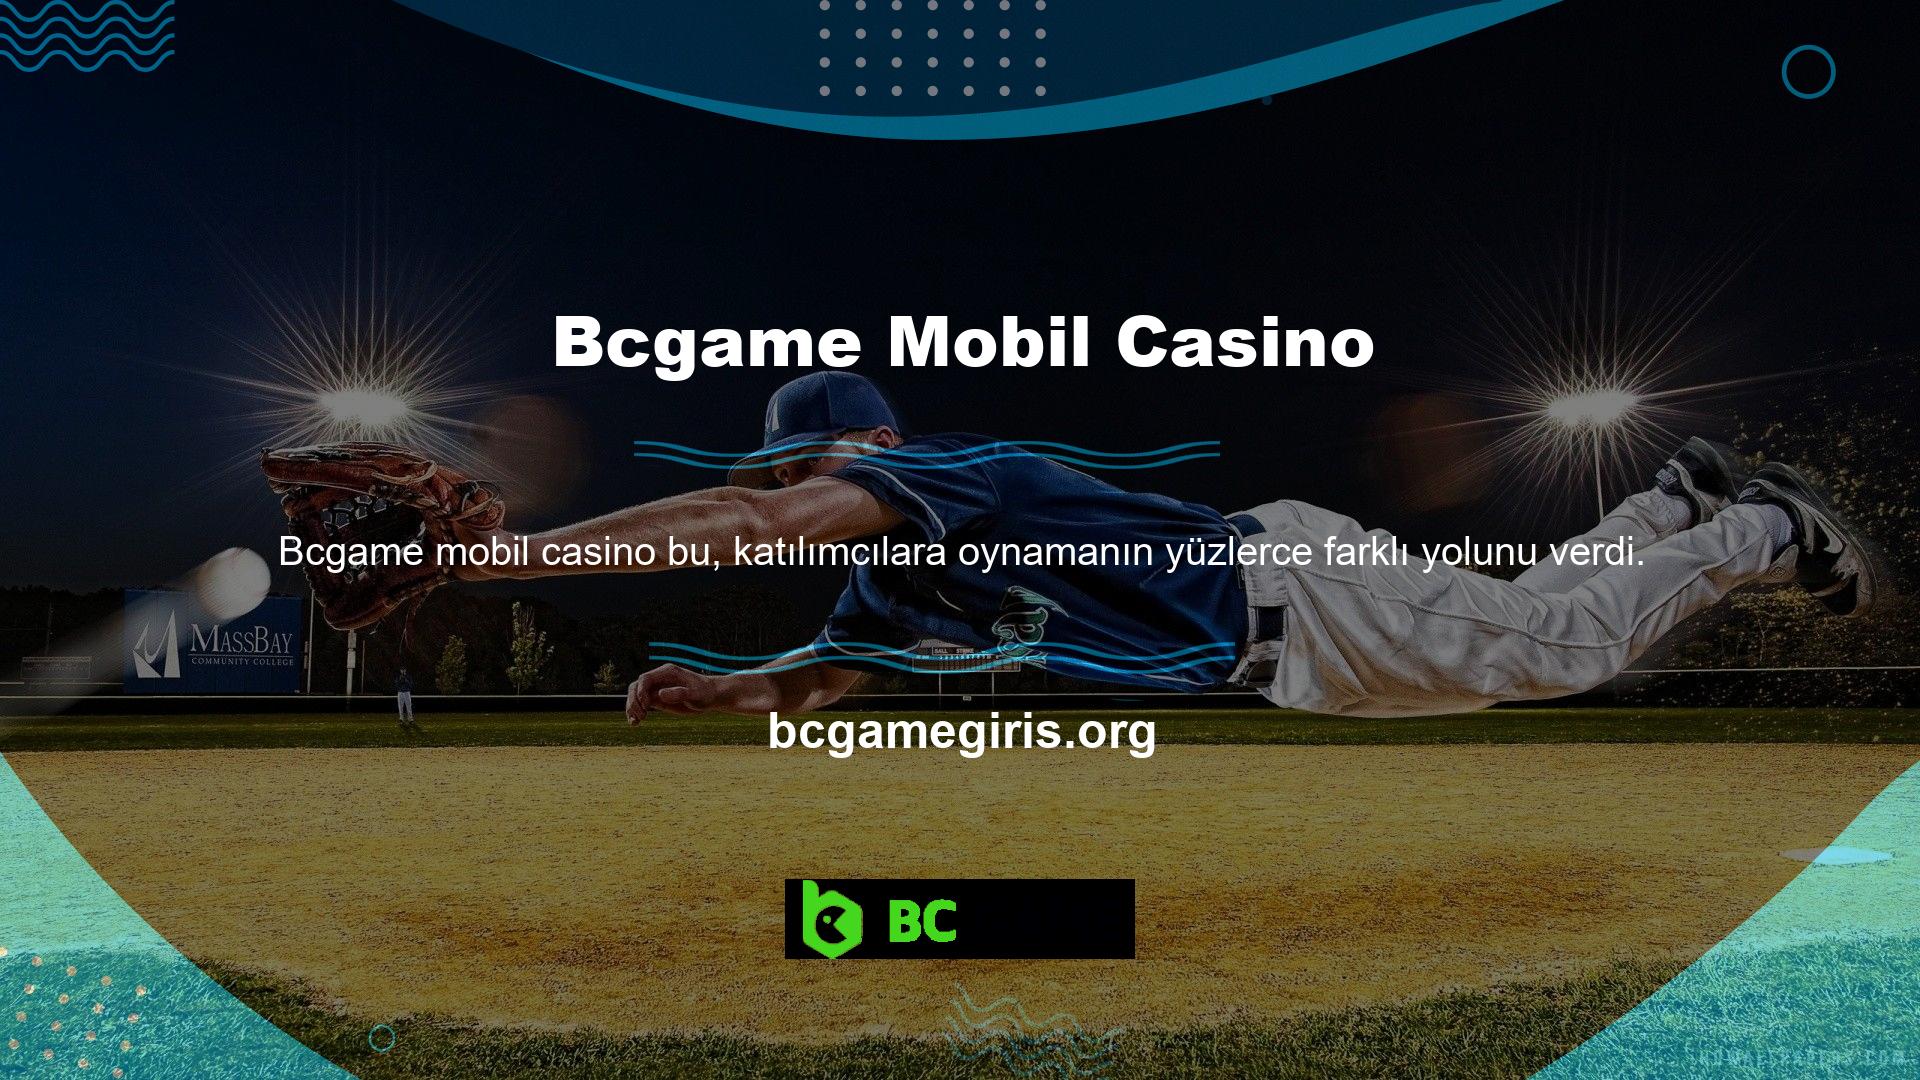 Bcgame Mobil Casino ne kadar hızlı? Mobil casino seçeneği üyeler için idealdir